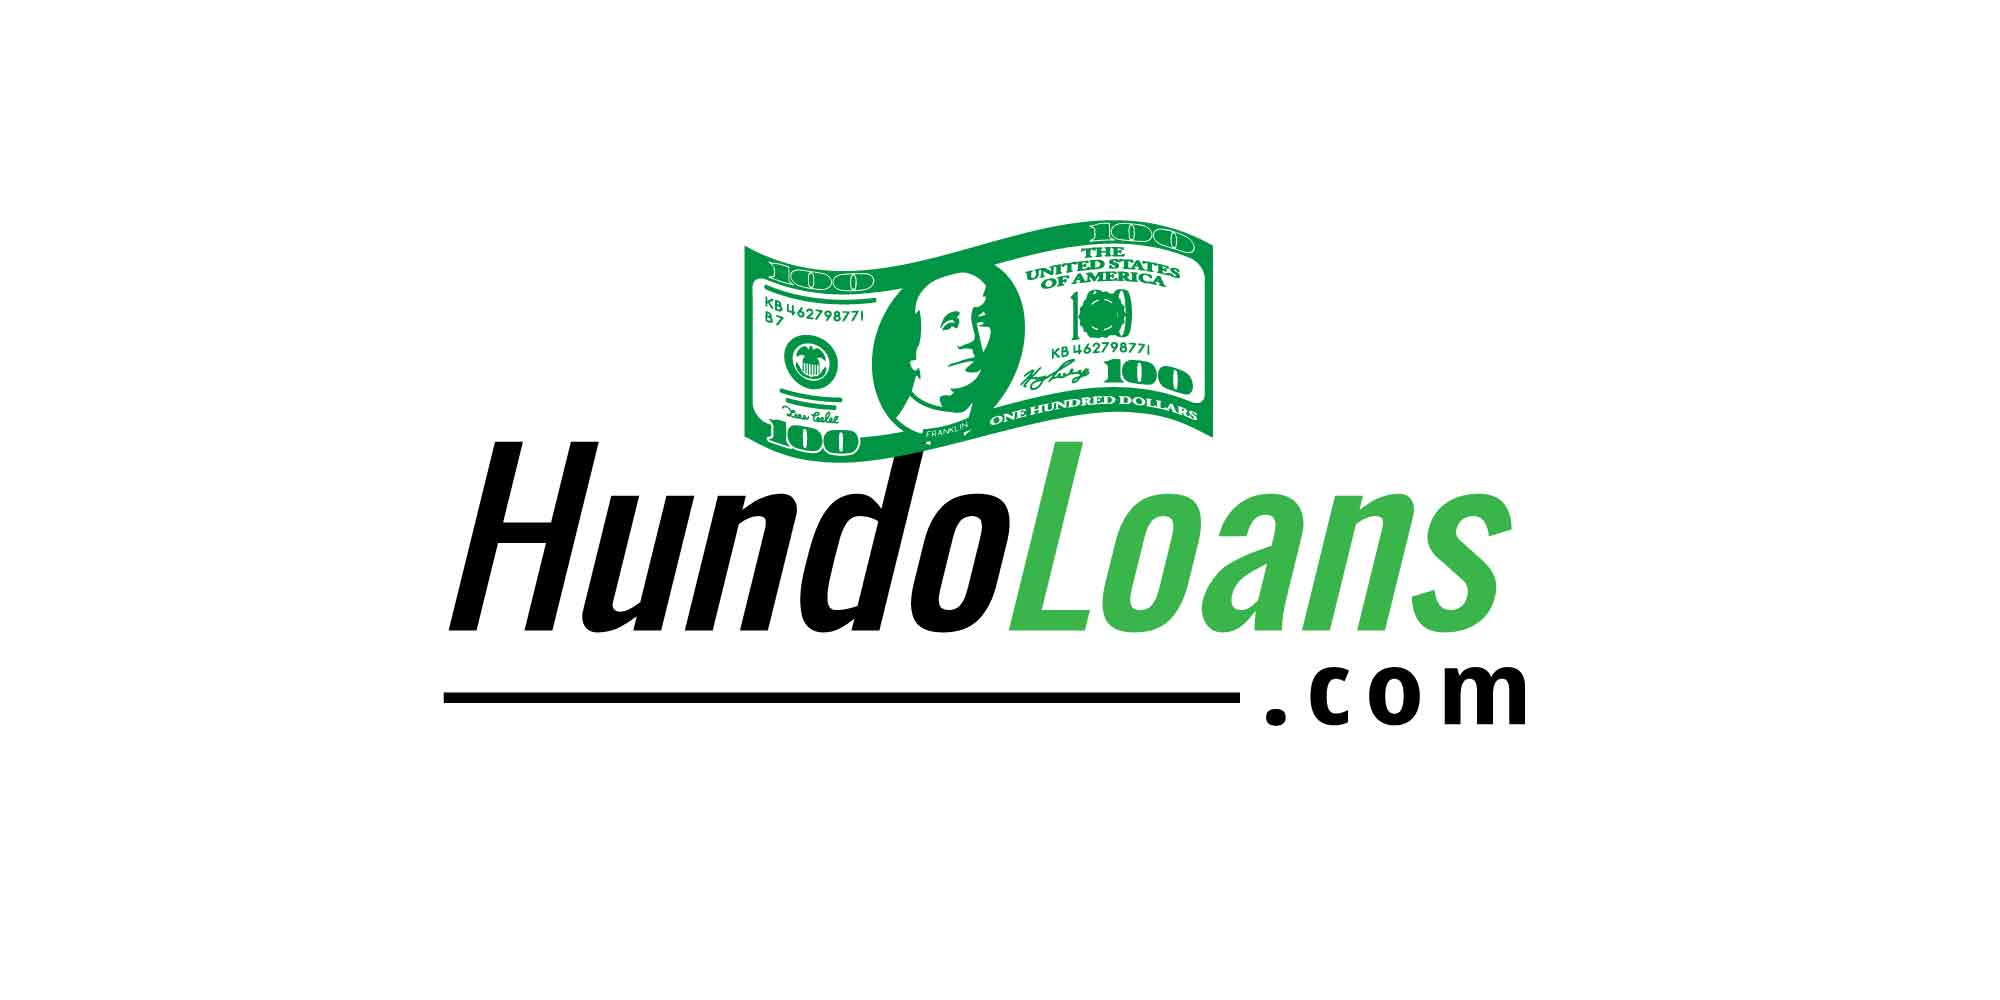 installment loans no credit check